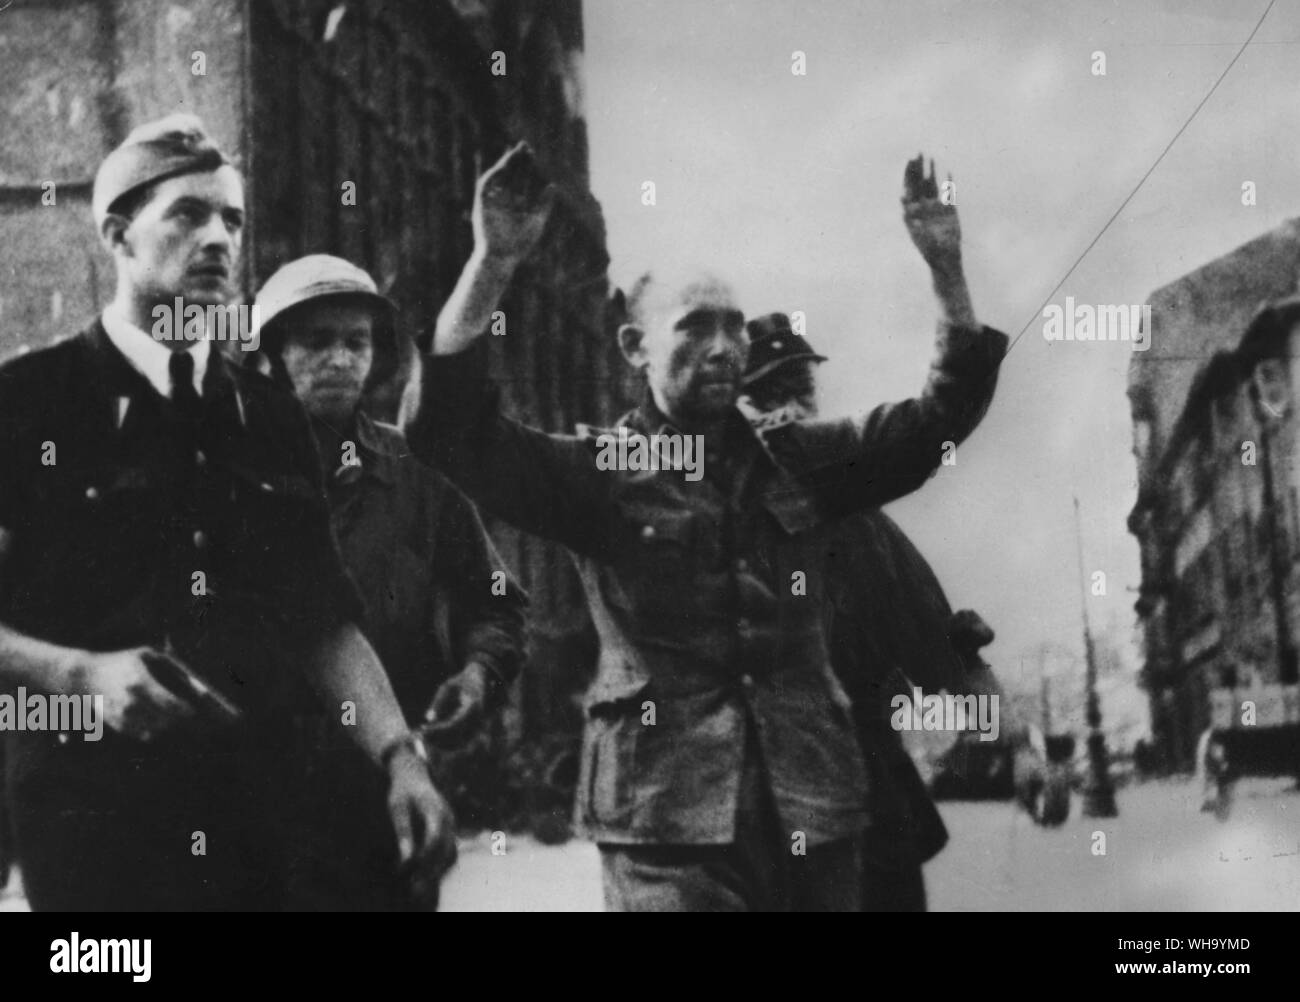 WW2 : En 1944, l'Armée polonaise de l'intérieur rose contre les Nazis à Varsovie, sachant que l'Armée rouge n'est qu'à 14 kilomètres. Mais les Russes, qui avaient appelé à la rébellion, stoppé et laissé les Polonais à lutter seul. Ils ont tué 26 000 nazis, mais a subi un terrible vengeance eux-mêmes. Photo : le bastion allemand dans la circonscription téléphonique sur Zielva Street a été capturé. Le commandant allemand d'être prises pour un camp de prisonniers. Banque D'Images